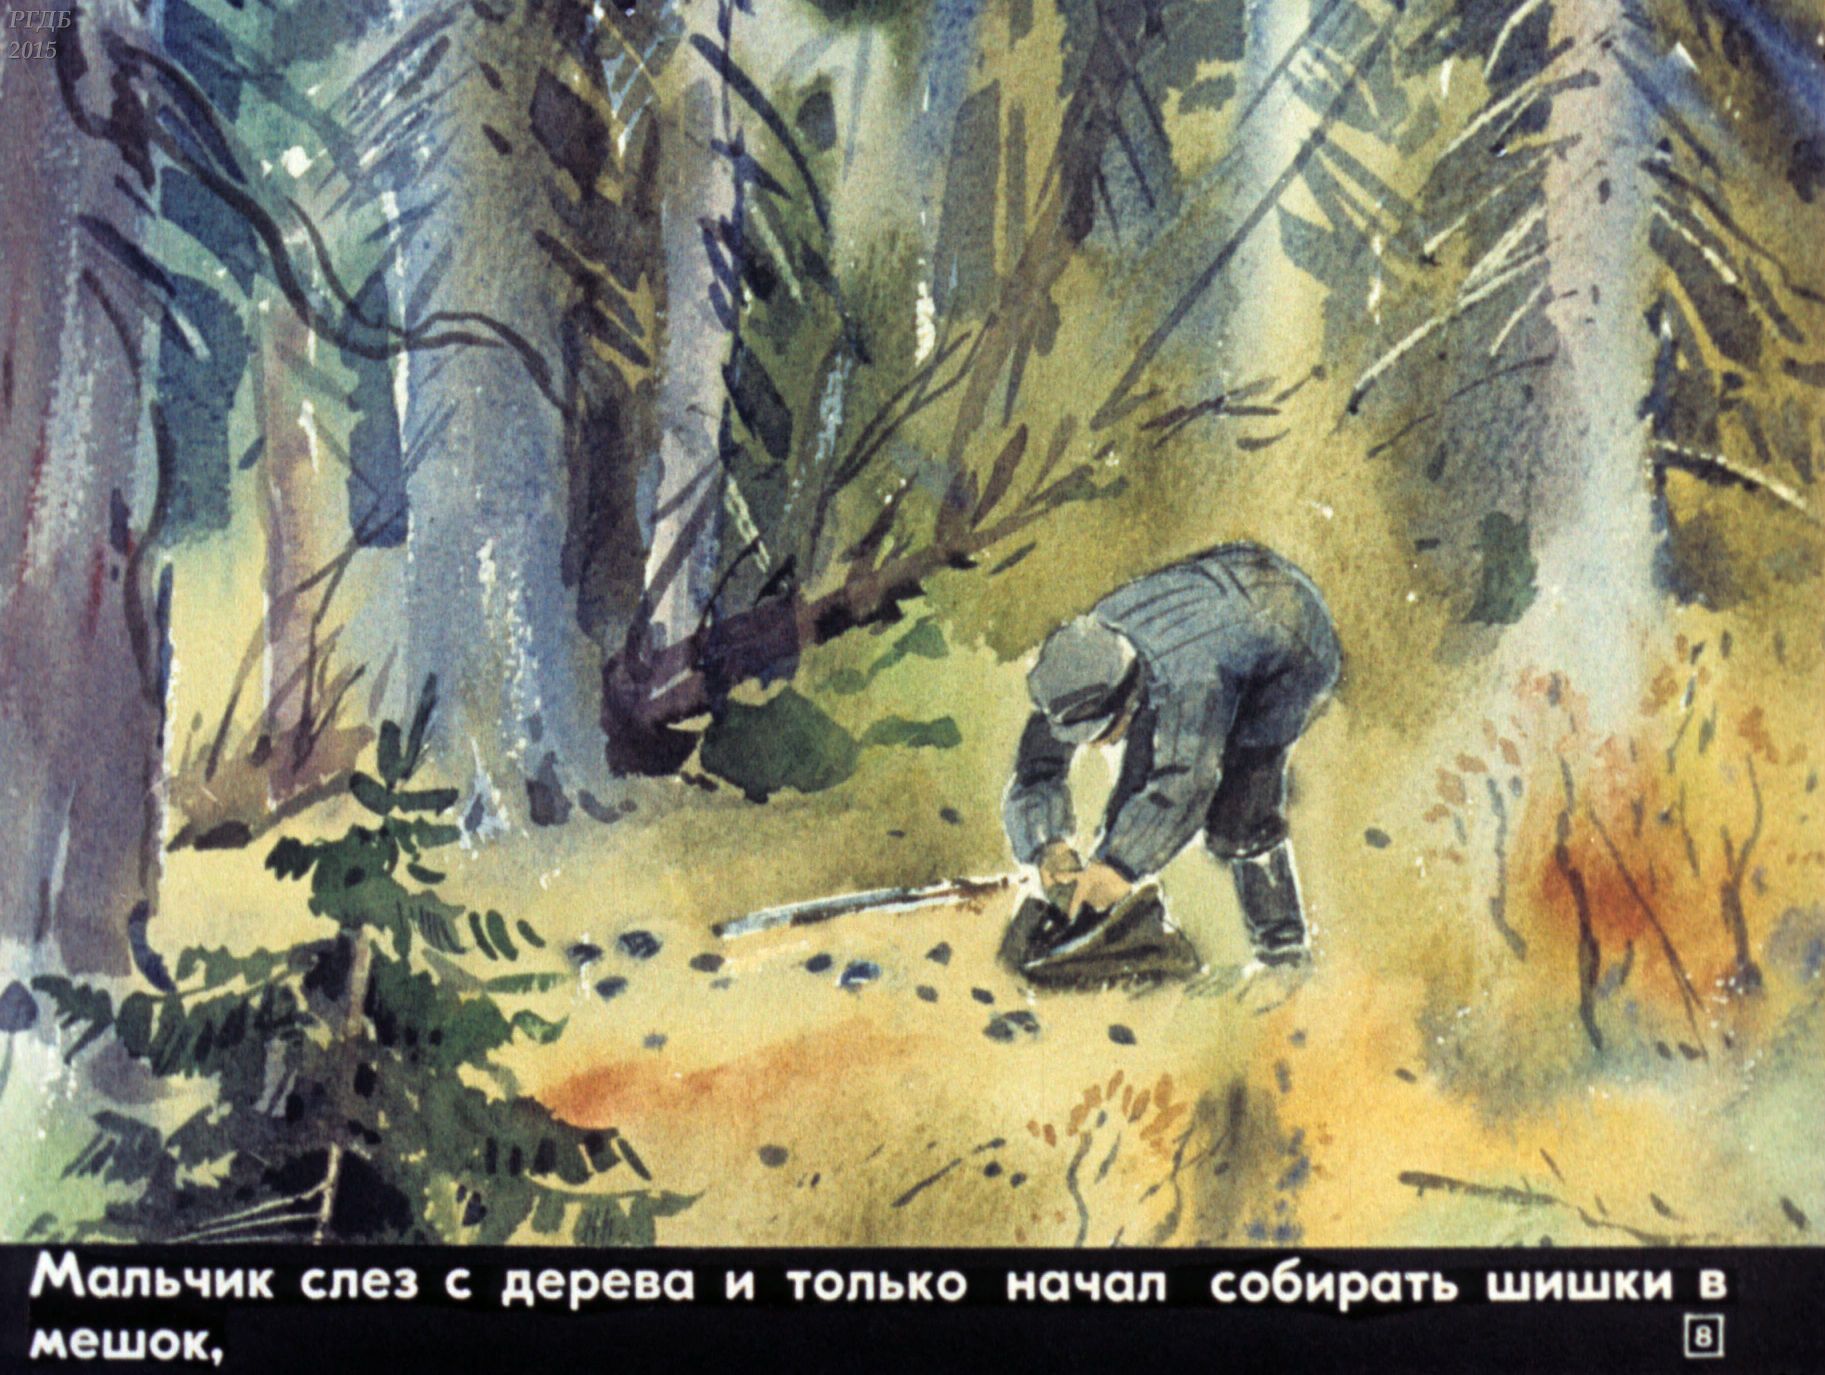 Пароход который встретил васютка. Иллюстрация к рассказу Астафьева Васюткино оз. Васюткино озеро Васютка.